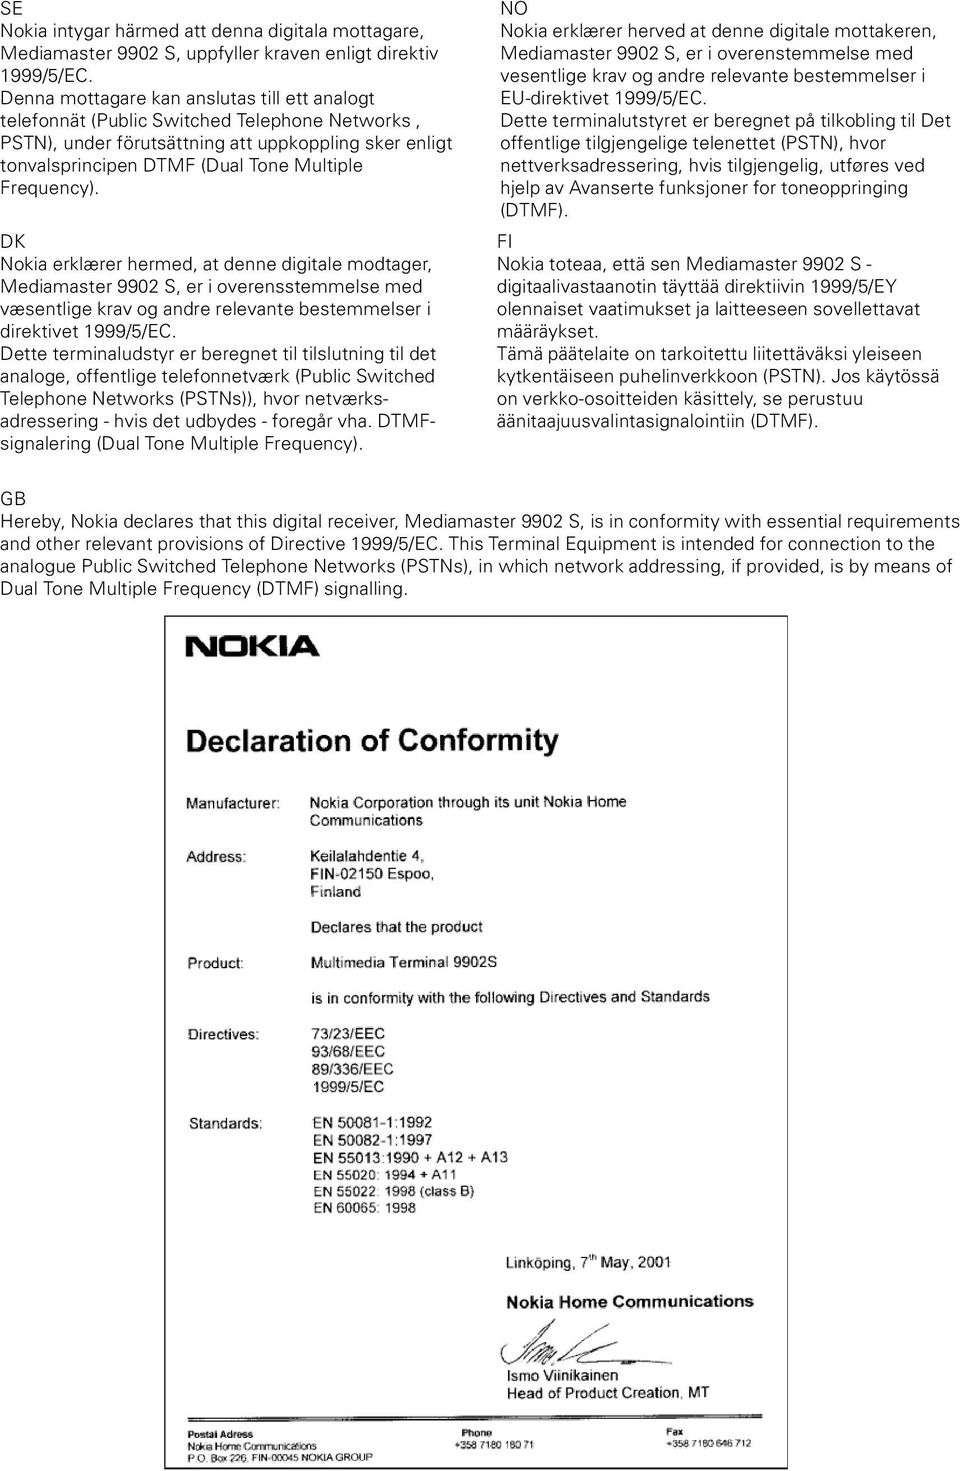 Frequency). DK Nokia erklærer hermed, at denne digitale modtager, Mediamaster 9902 S, er i overensstemmelse med væsentlige krav og andre relevante bestemmelser i direktivet 1999/5/EC.